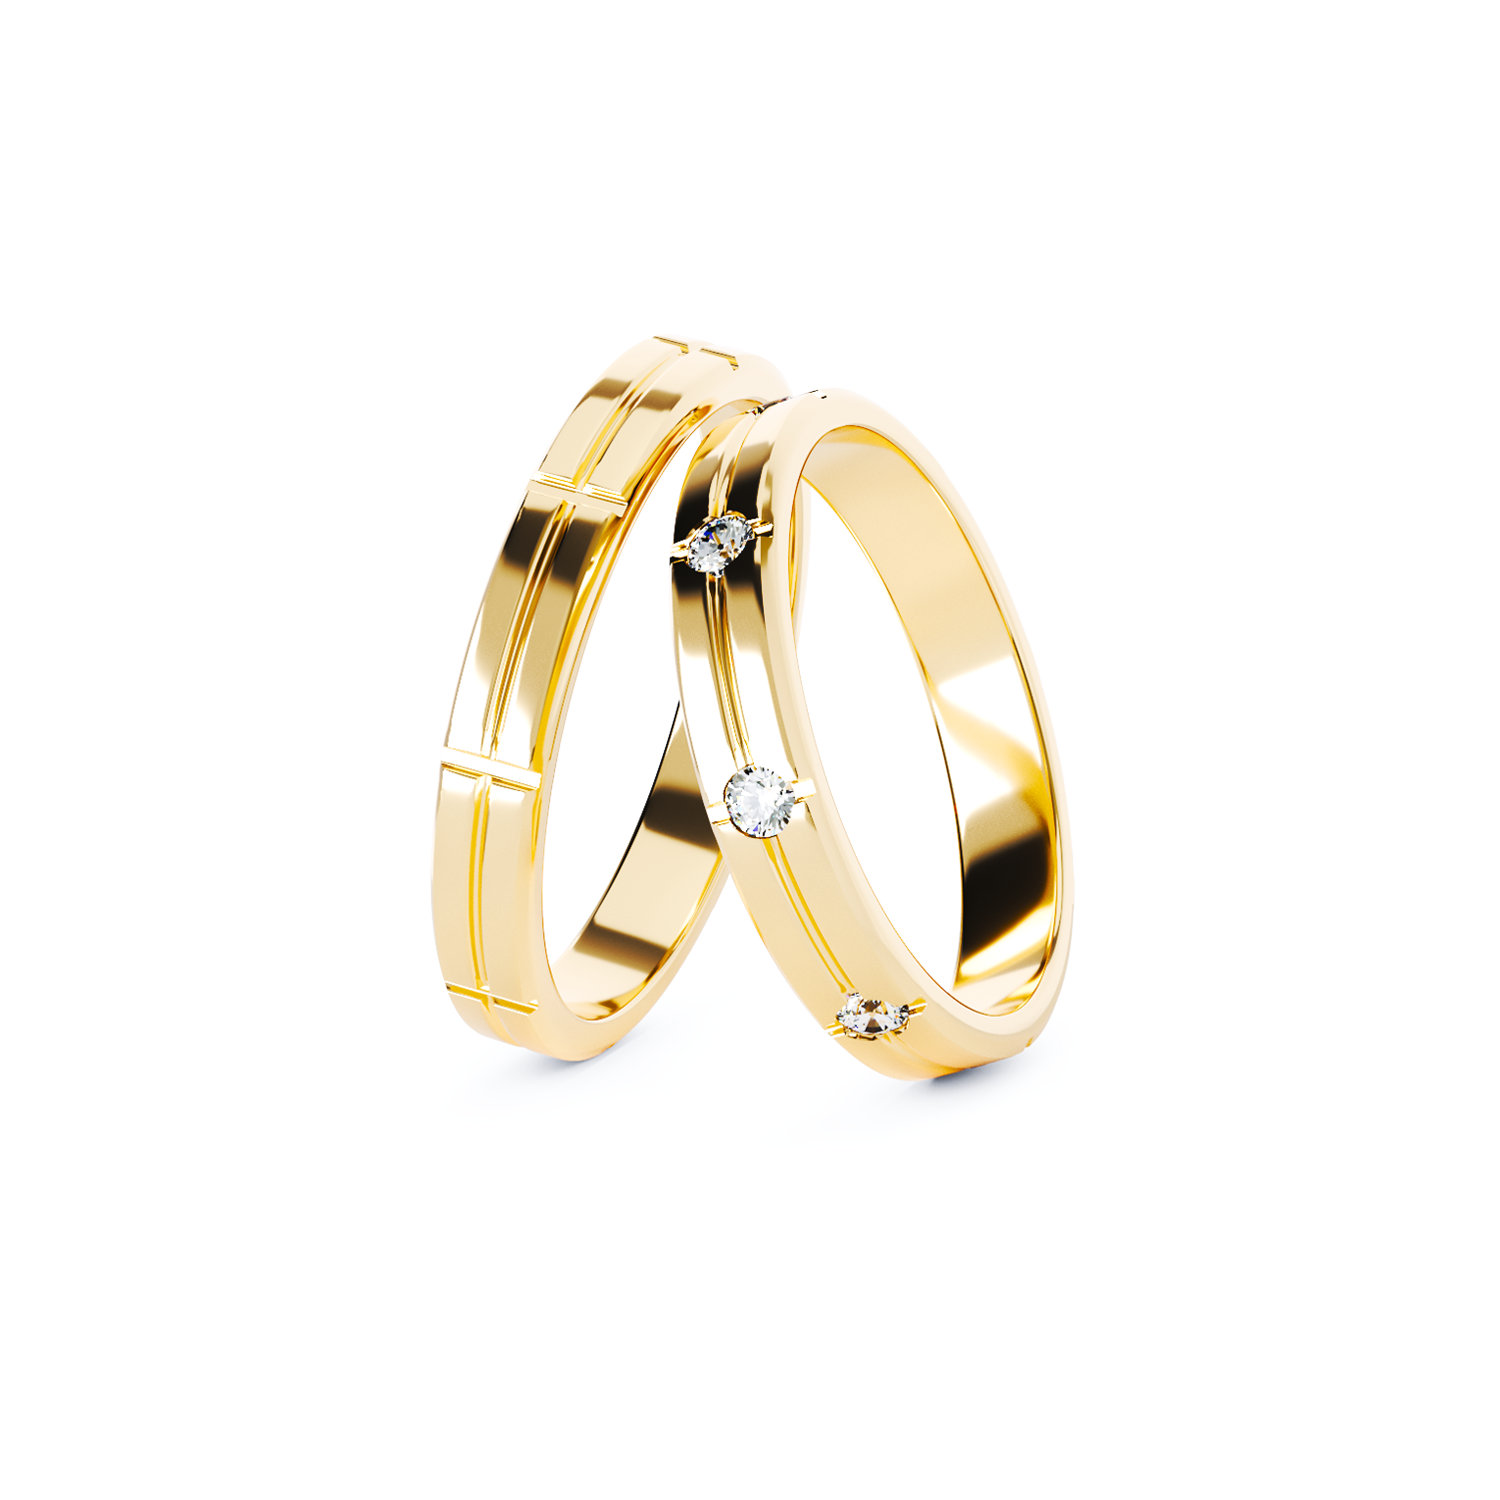 TEI-C681 arany jegygyűrű